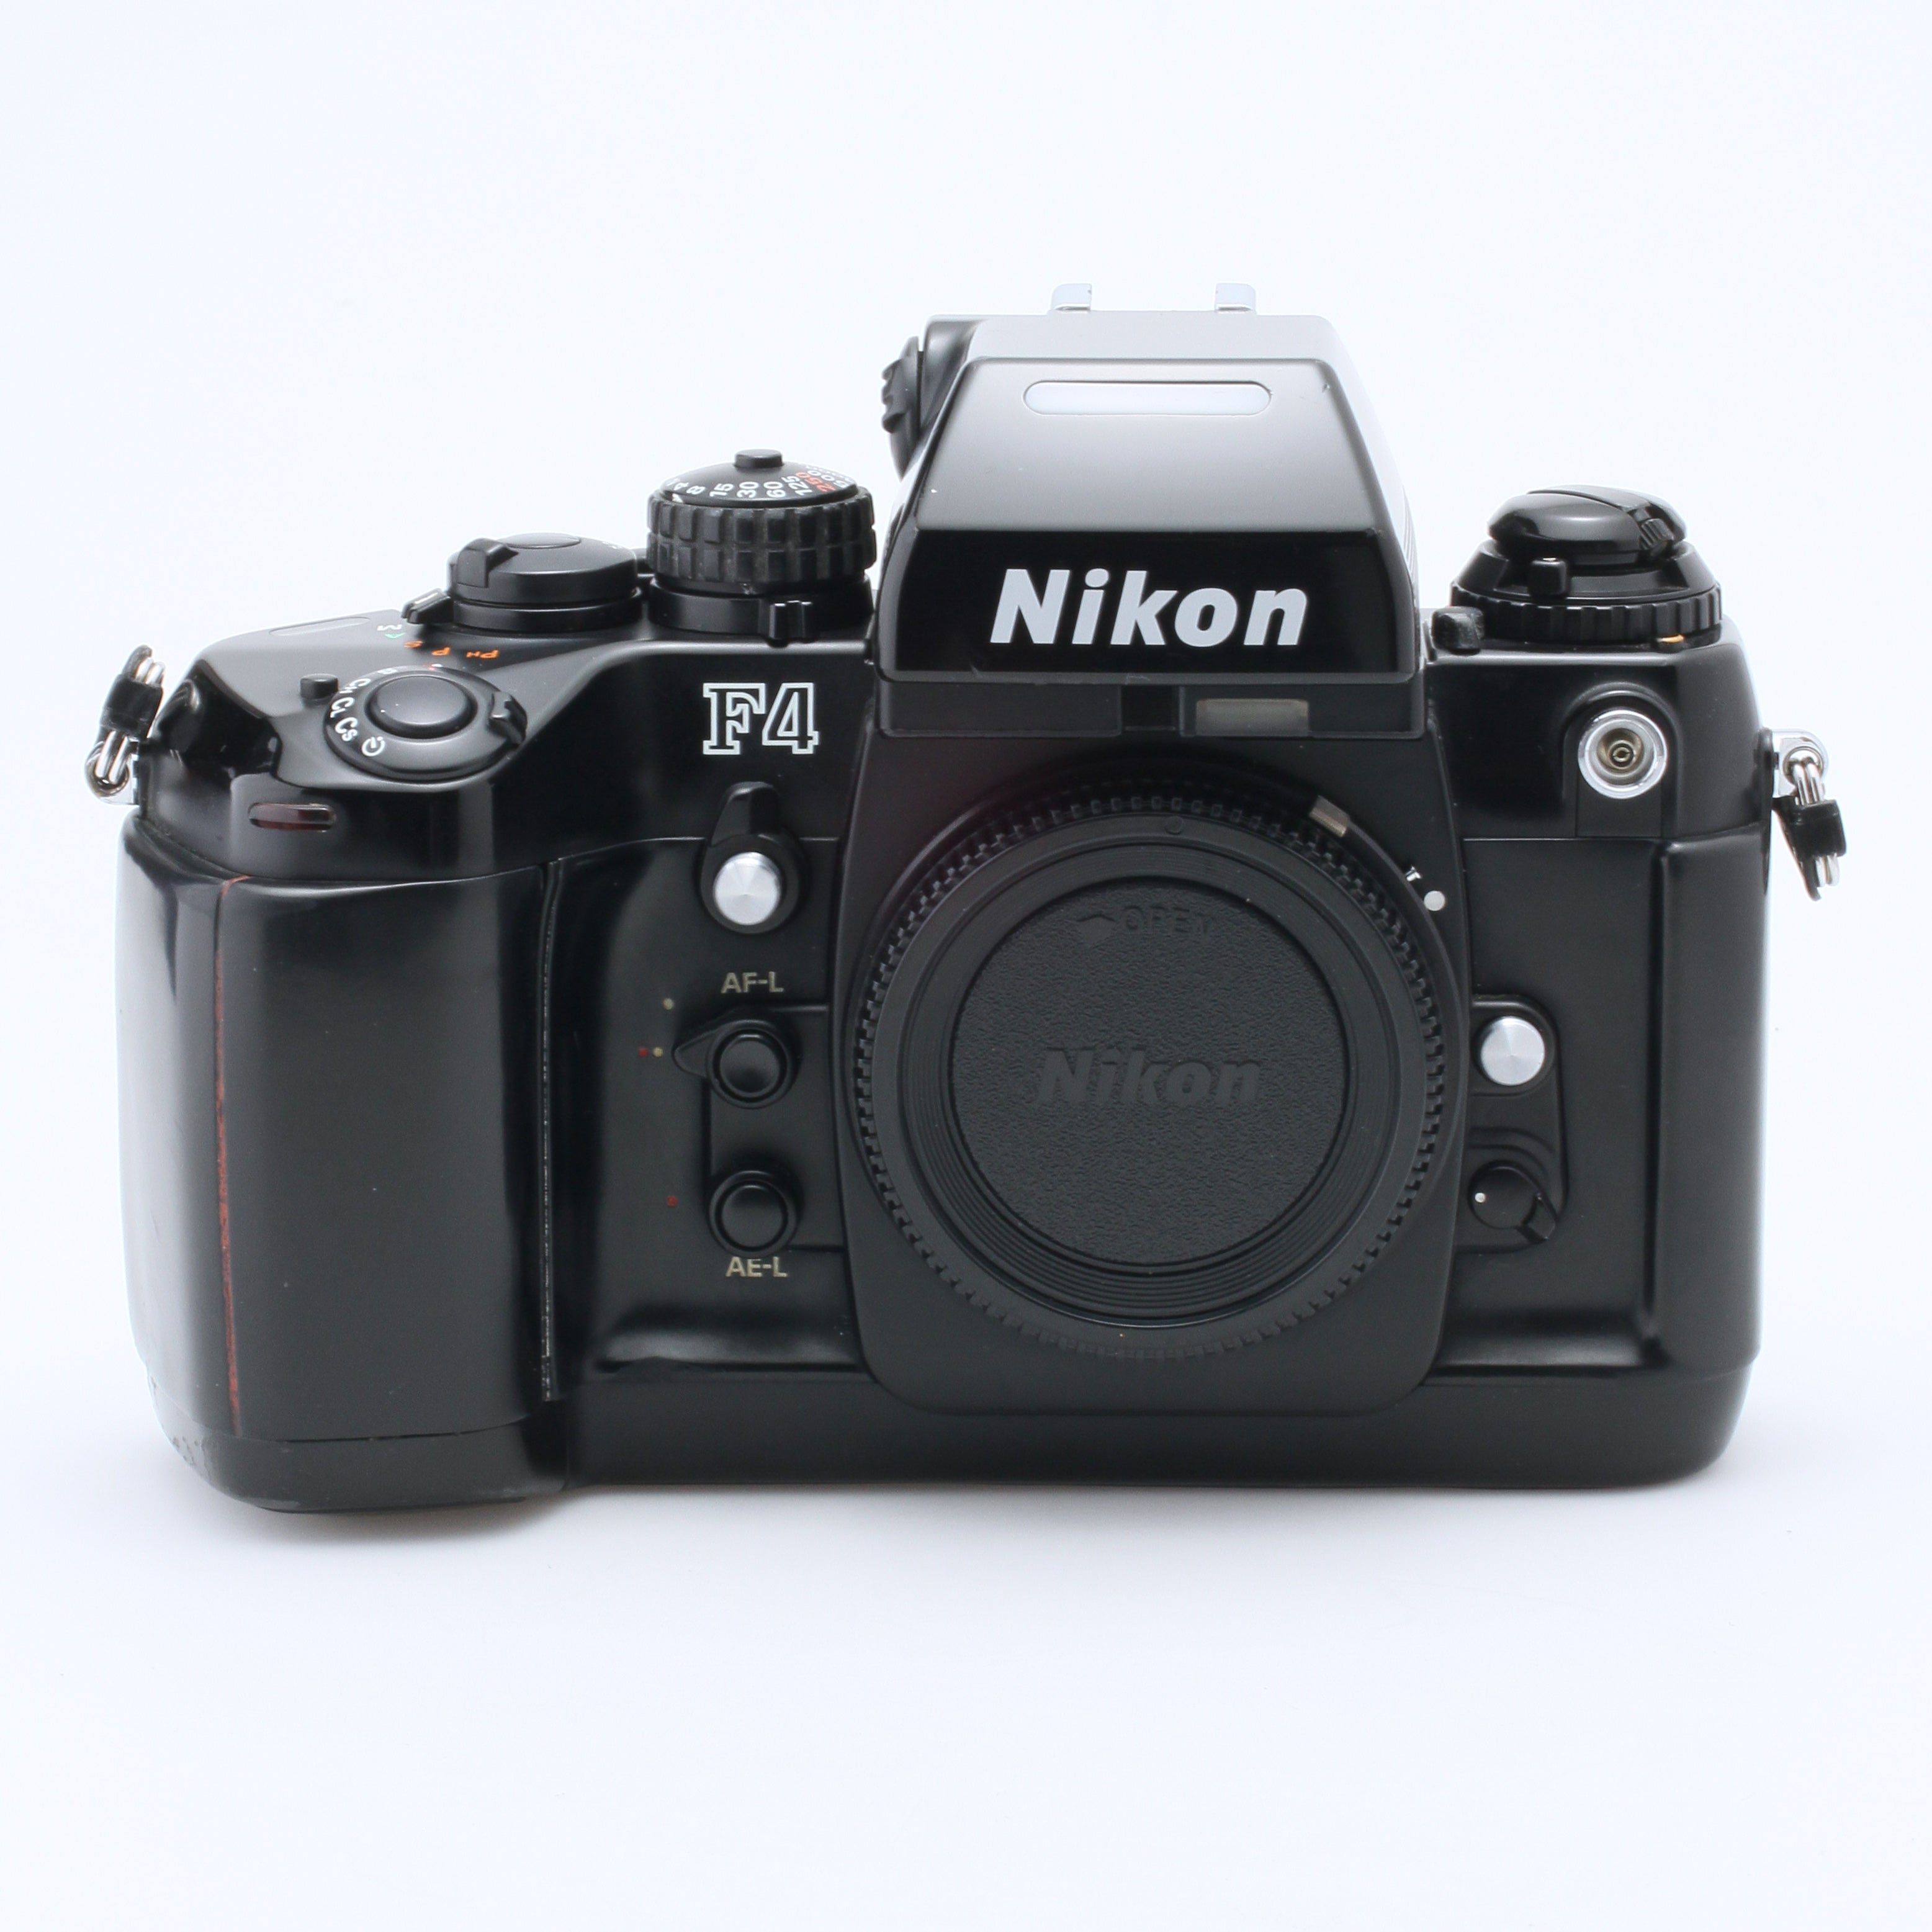 37.NIKON F4 Black Body SLR 35mm Film Camera made in Japan No 